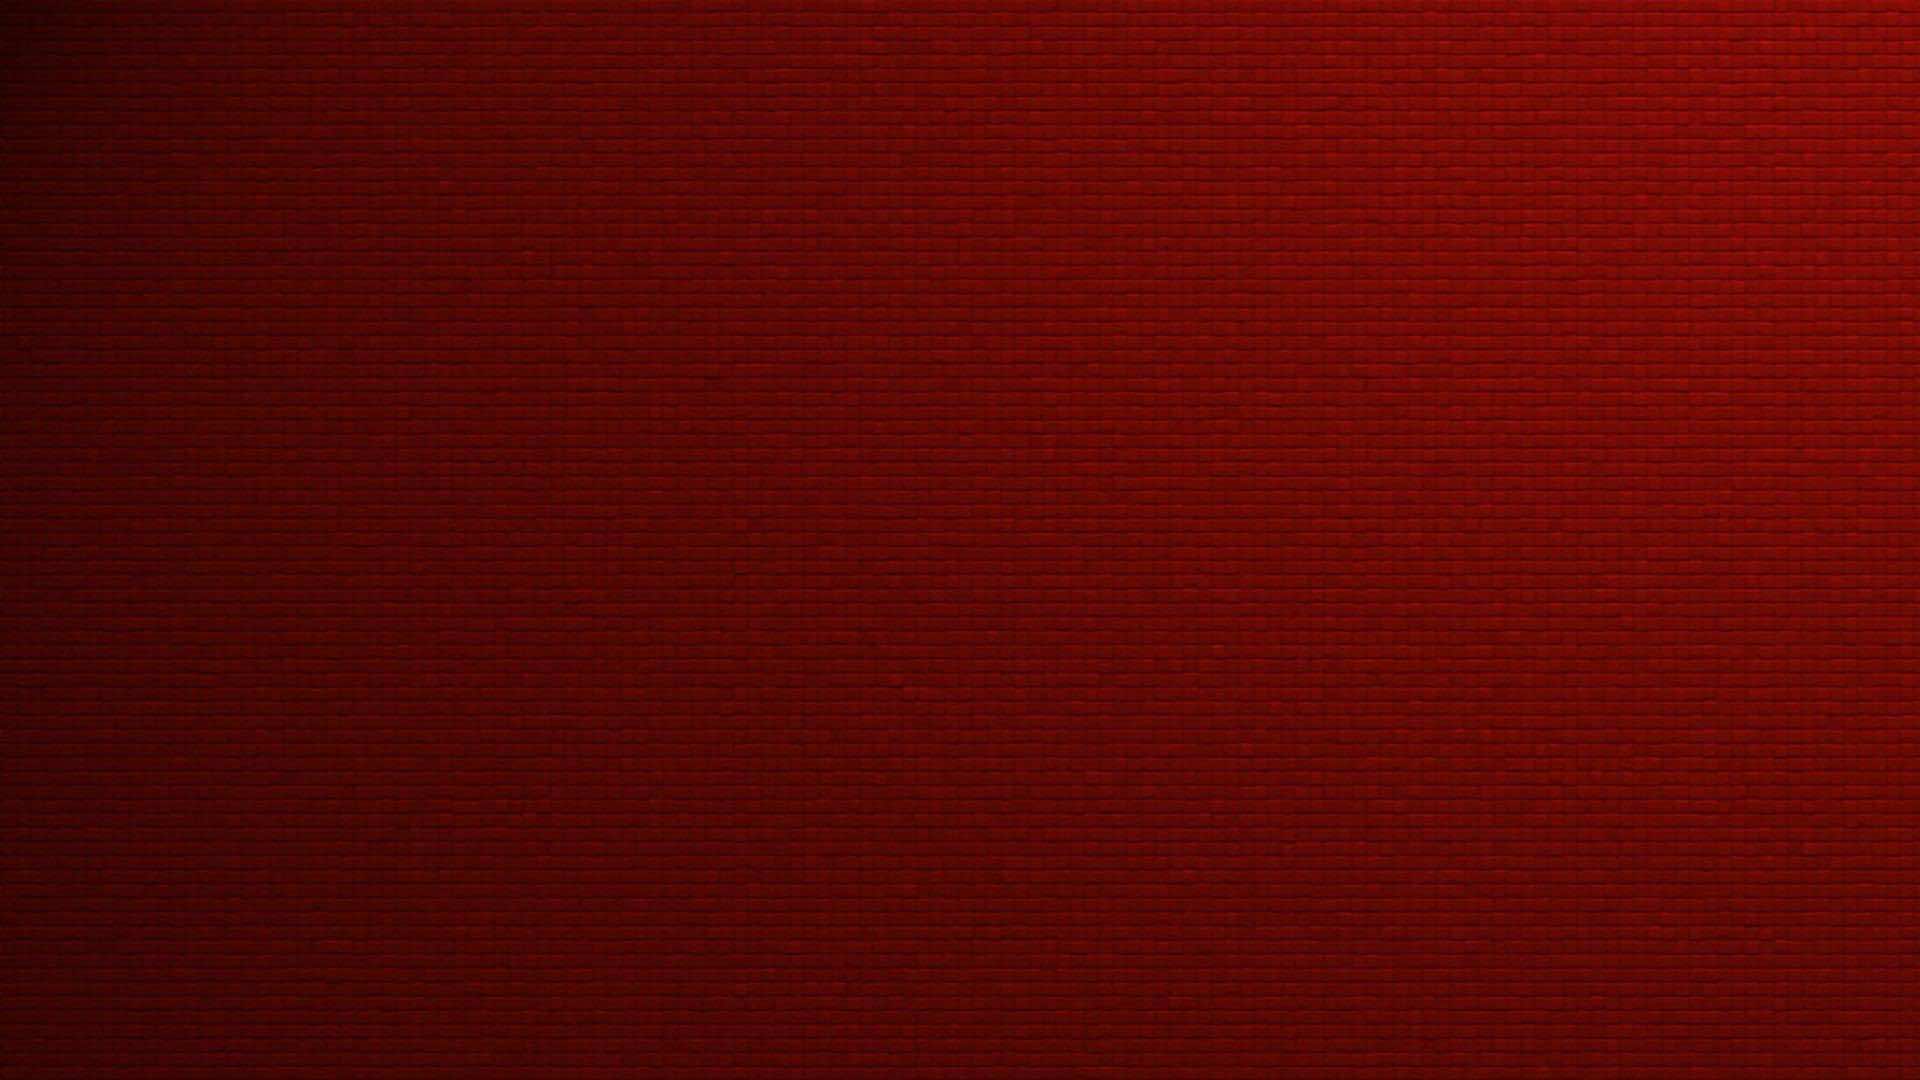 40 Crisp Red Wallpapers For Desktop, Laptop and Tablet Devic